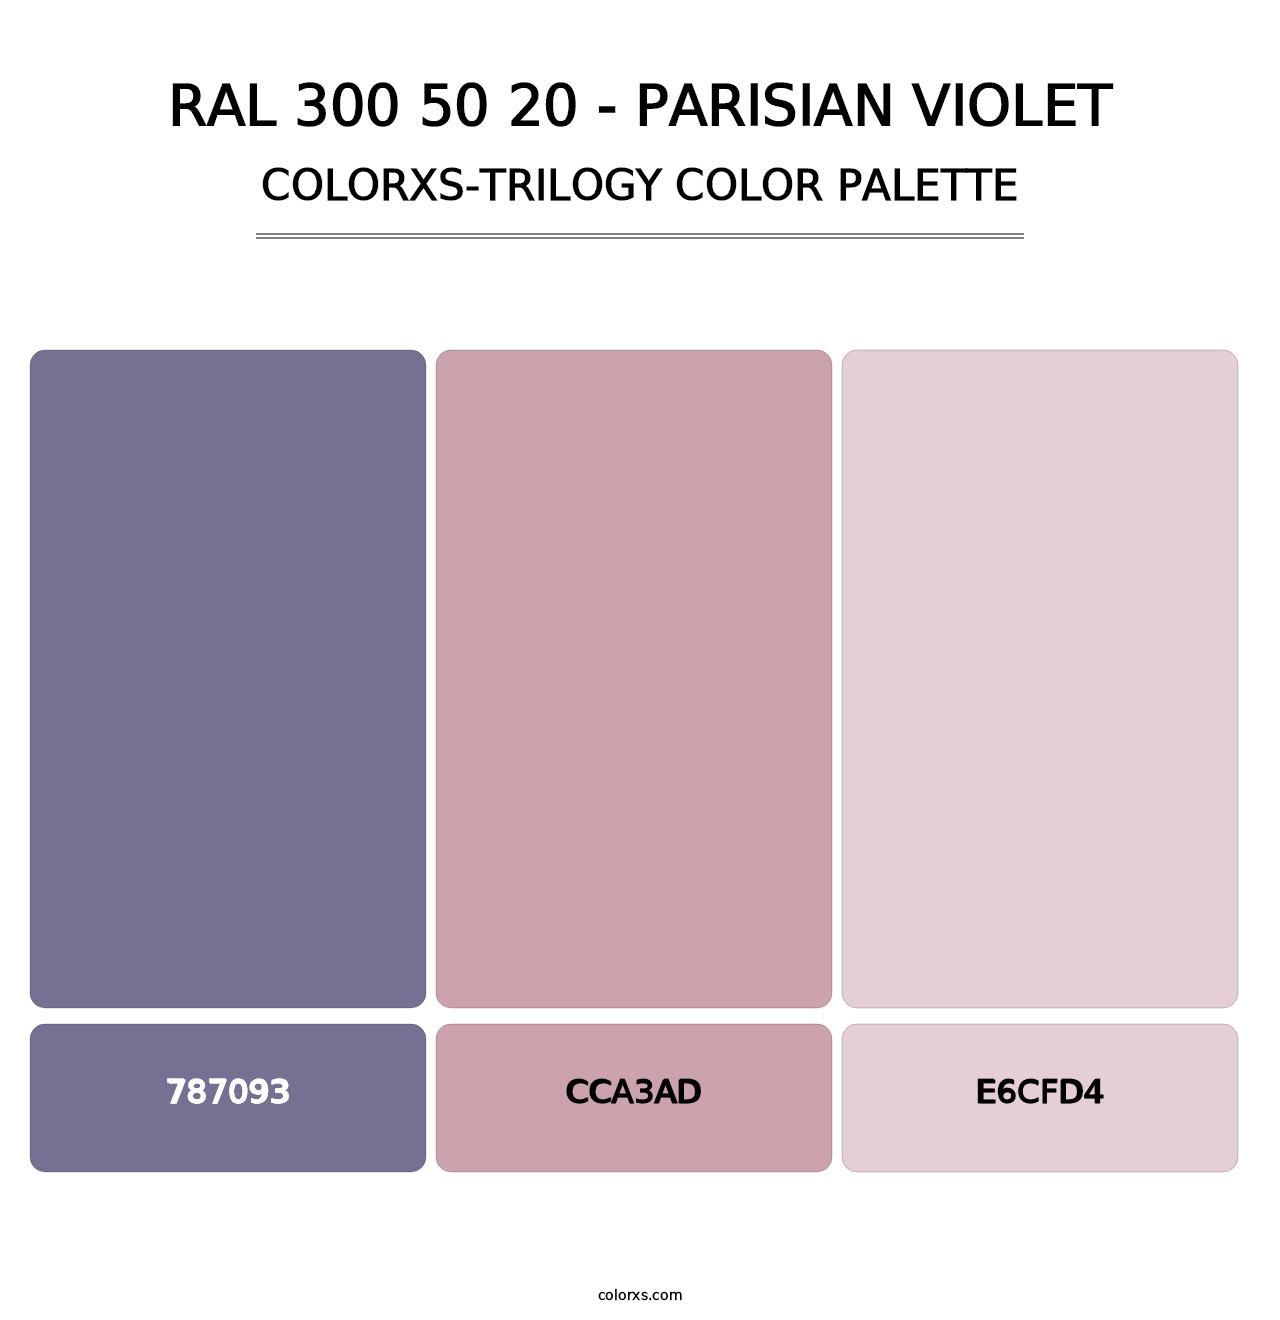 RAL 300 50 20 - Parisian Violet - Colorxs Trilogy Palette